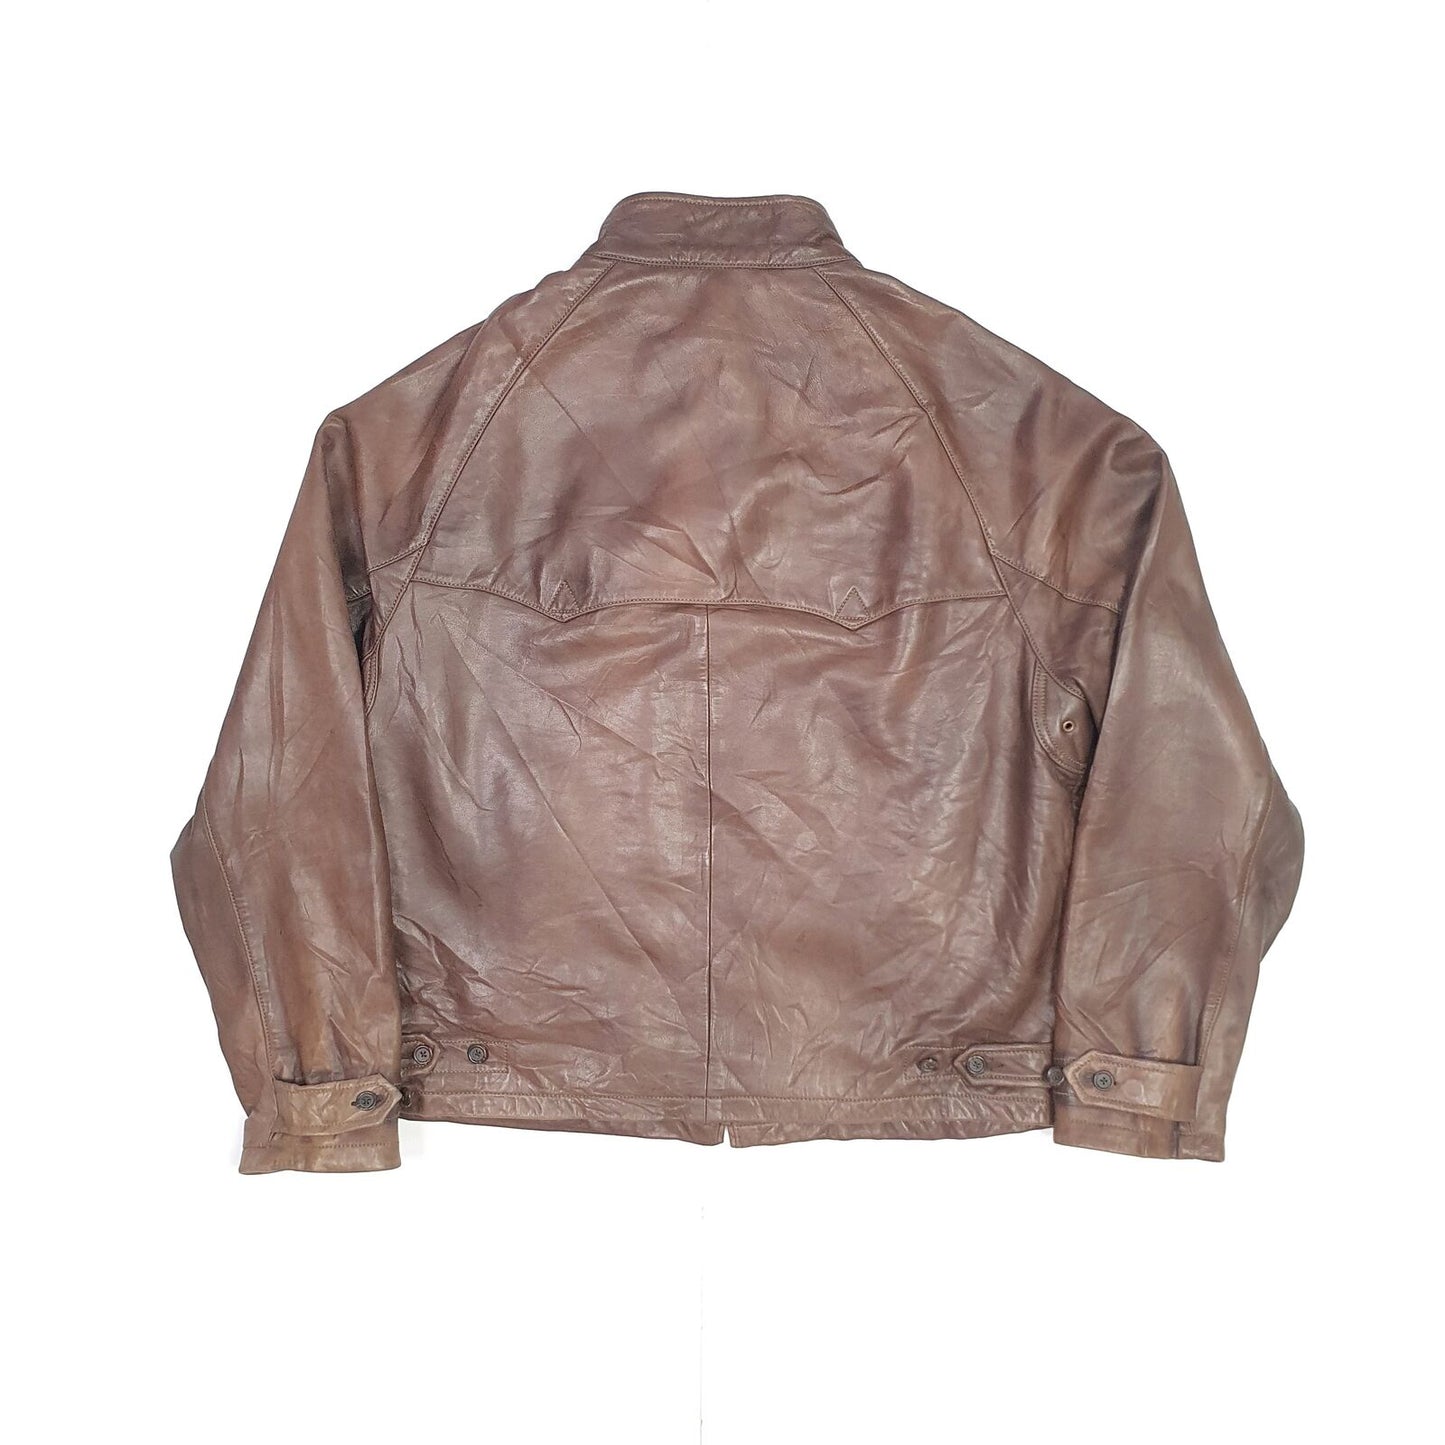 Mens POLO RALPH LAUREN 100% Genuine Calves Leather Jacket L